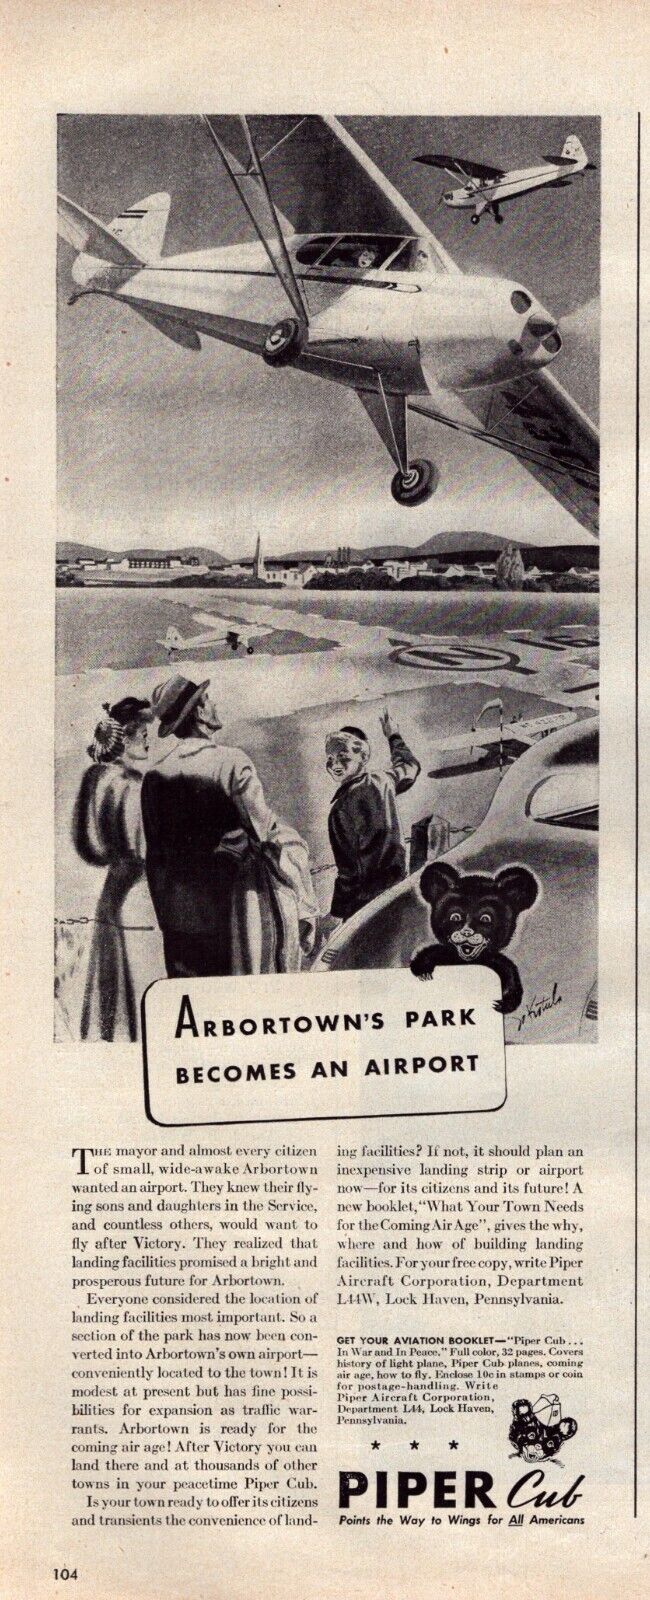 1944 Piper Cub Airplane Print Ad WWII Era Arbortowns Park Airport